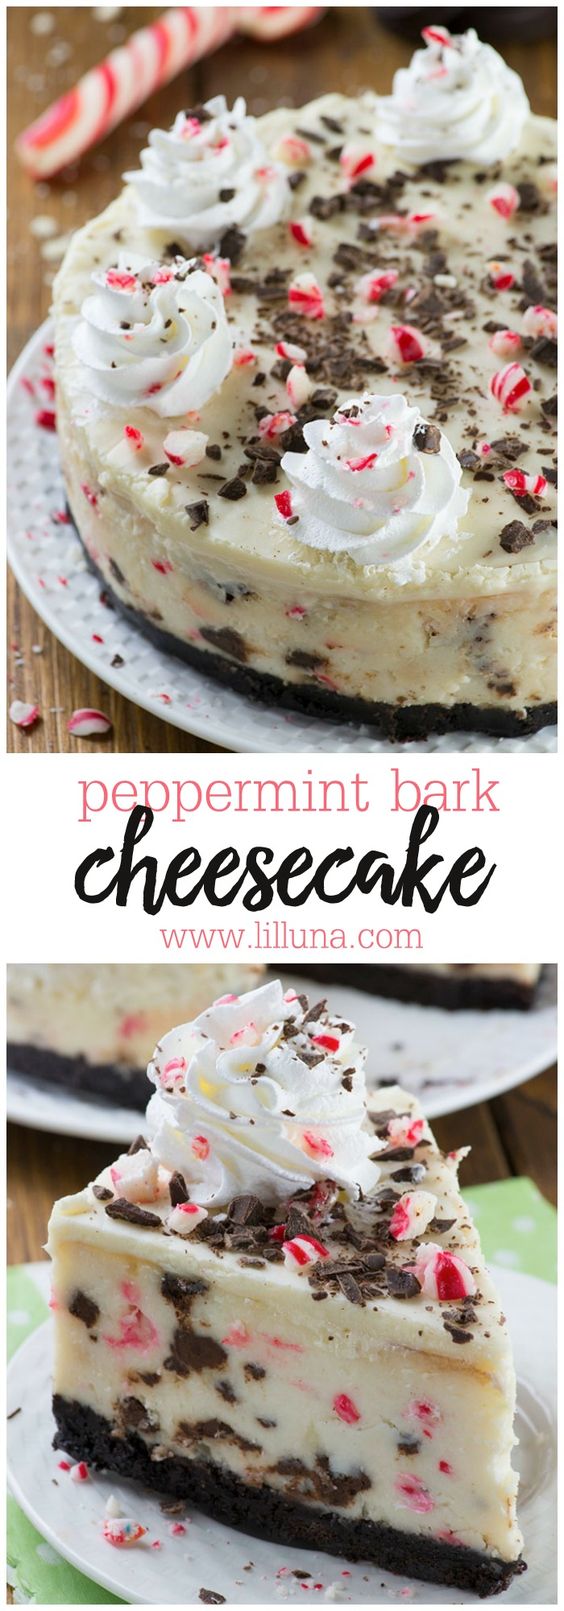 peppermint-bark-cheesecake